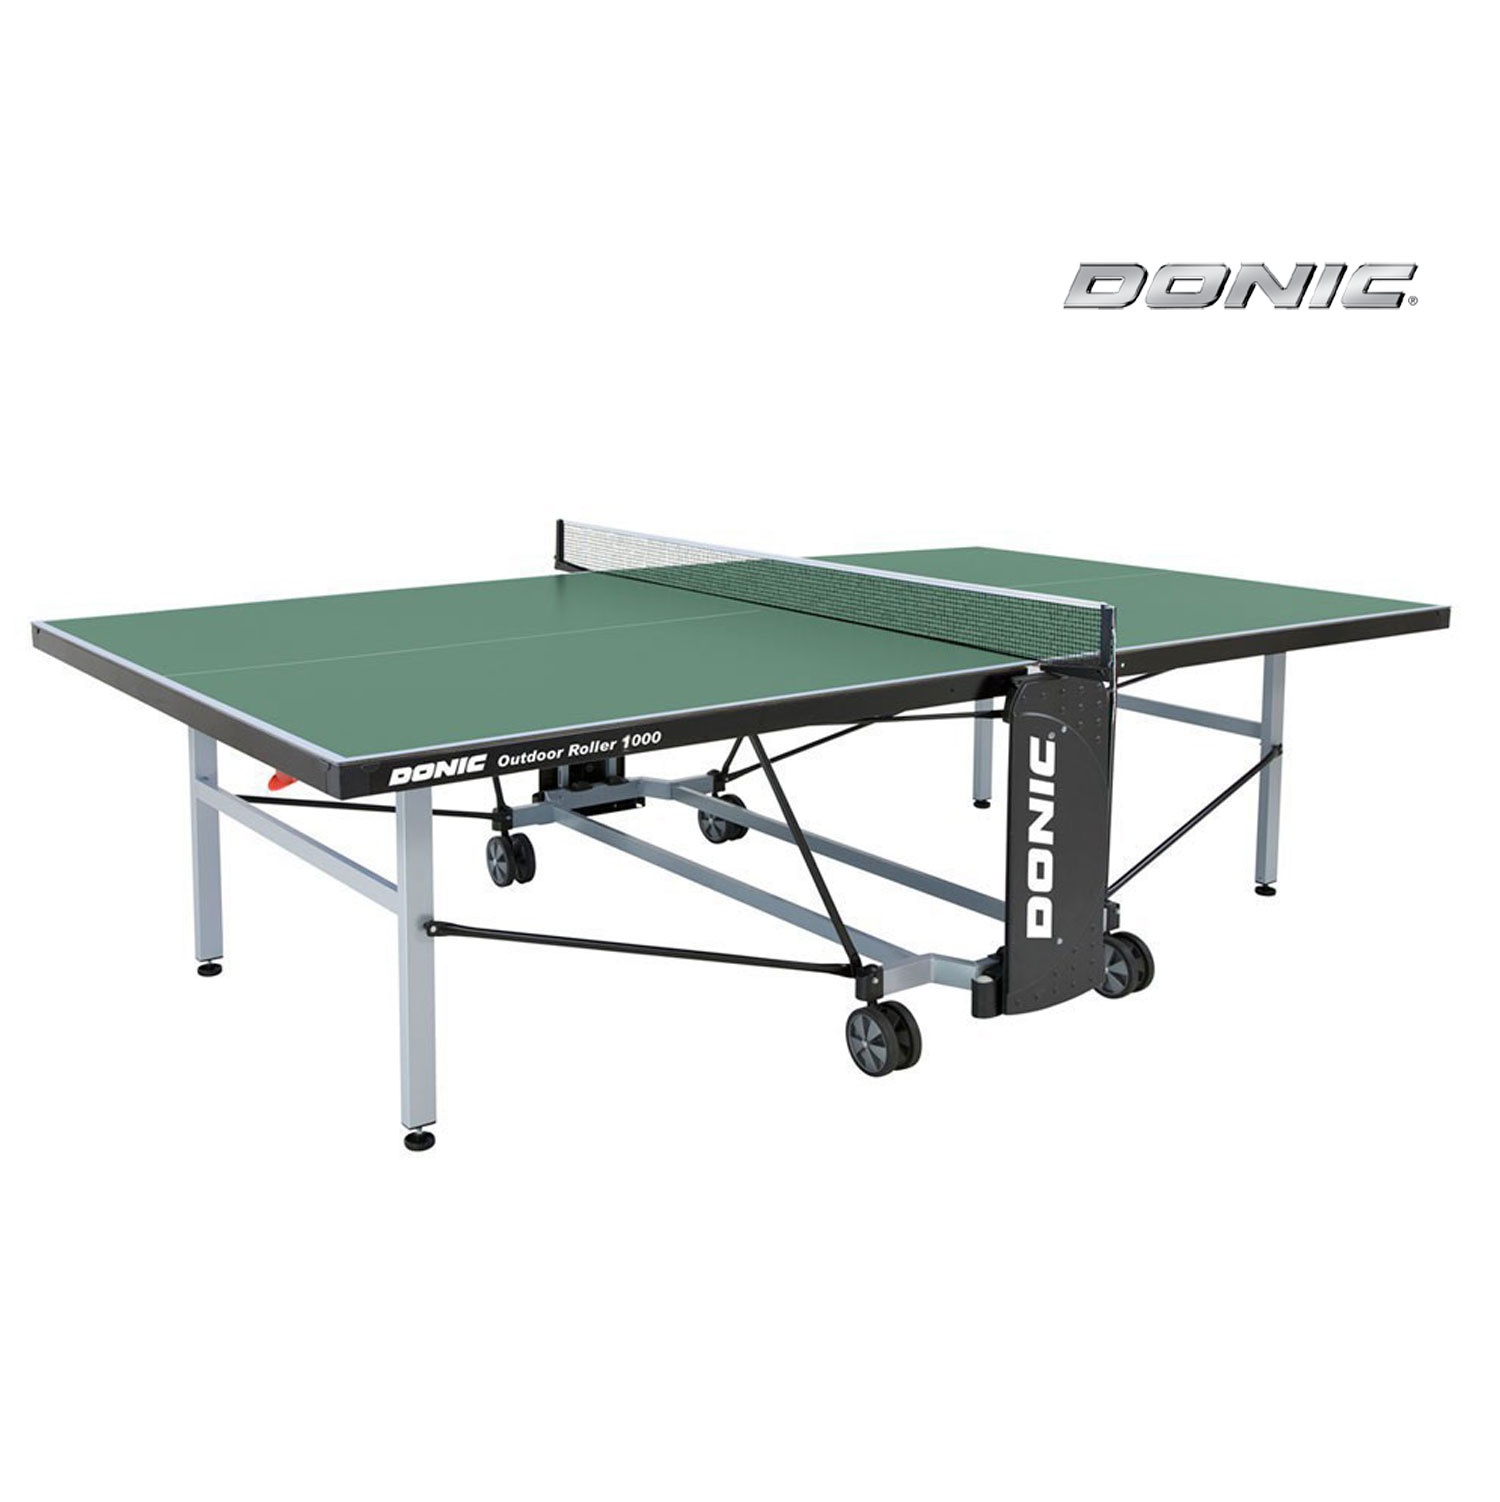 Теннисный стол Donic Outdoor Roller 1000 зелёный